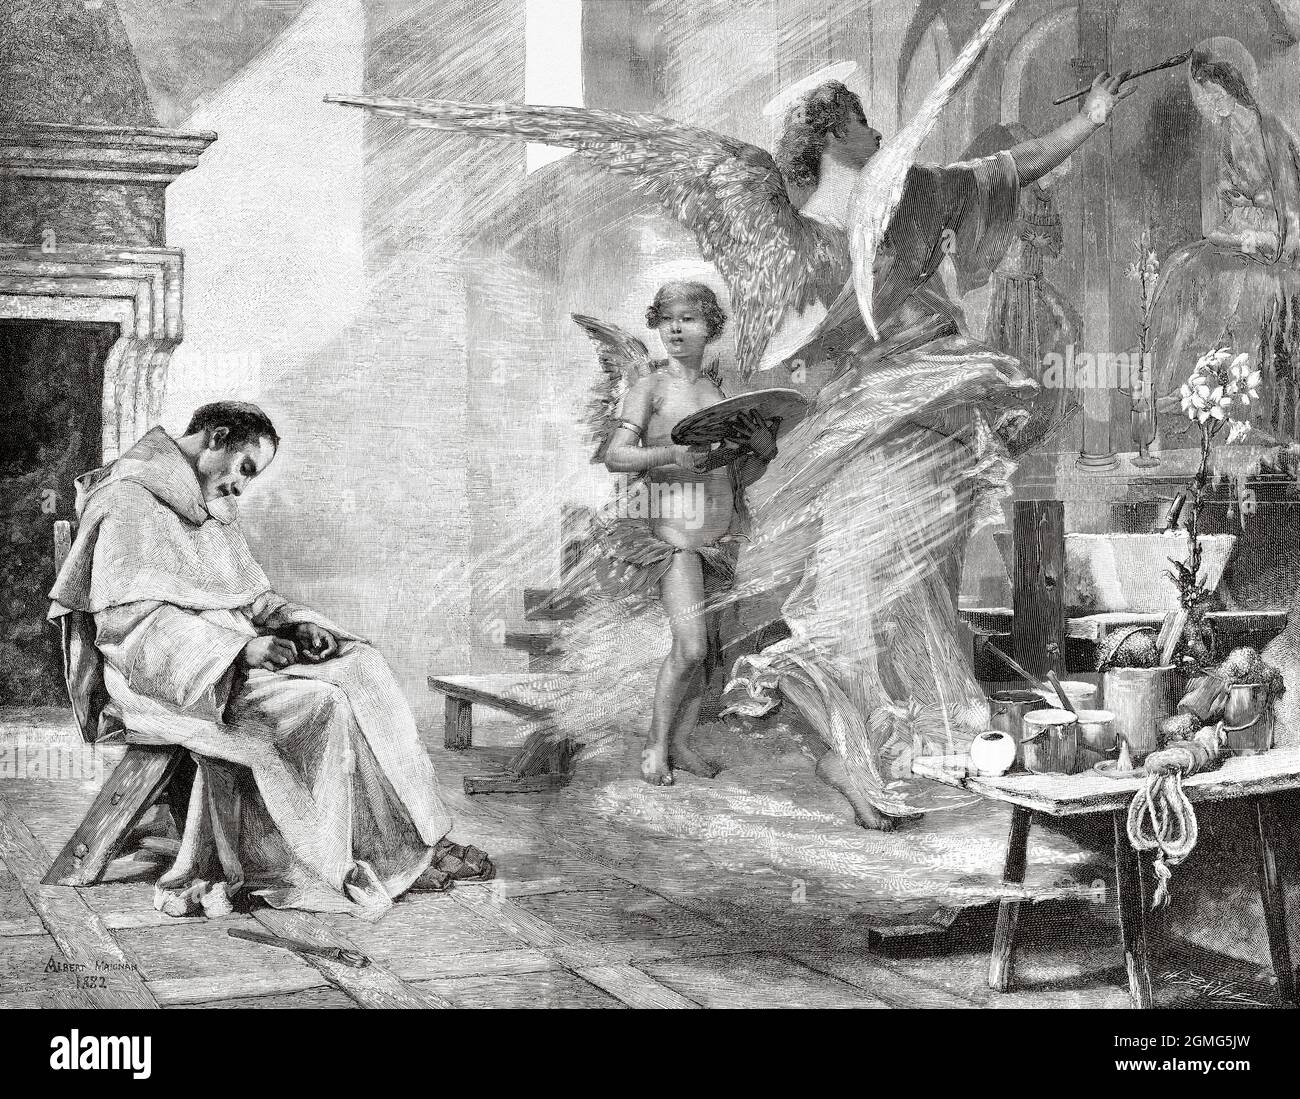 El sueño de Fra Angelico, pintura de Albert Pierre René Maignan (1845-1908) fue un pintor e ilustrador de historia francés. Antigua ilustración del siglo 19th grabada de La Ilustración Artística 1882 Foto de stock